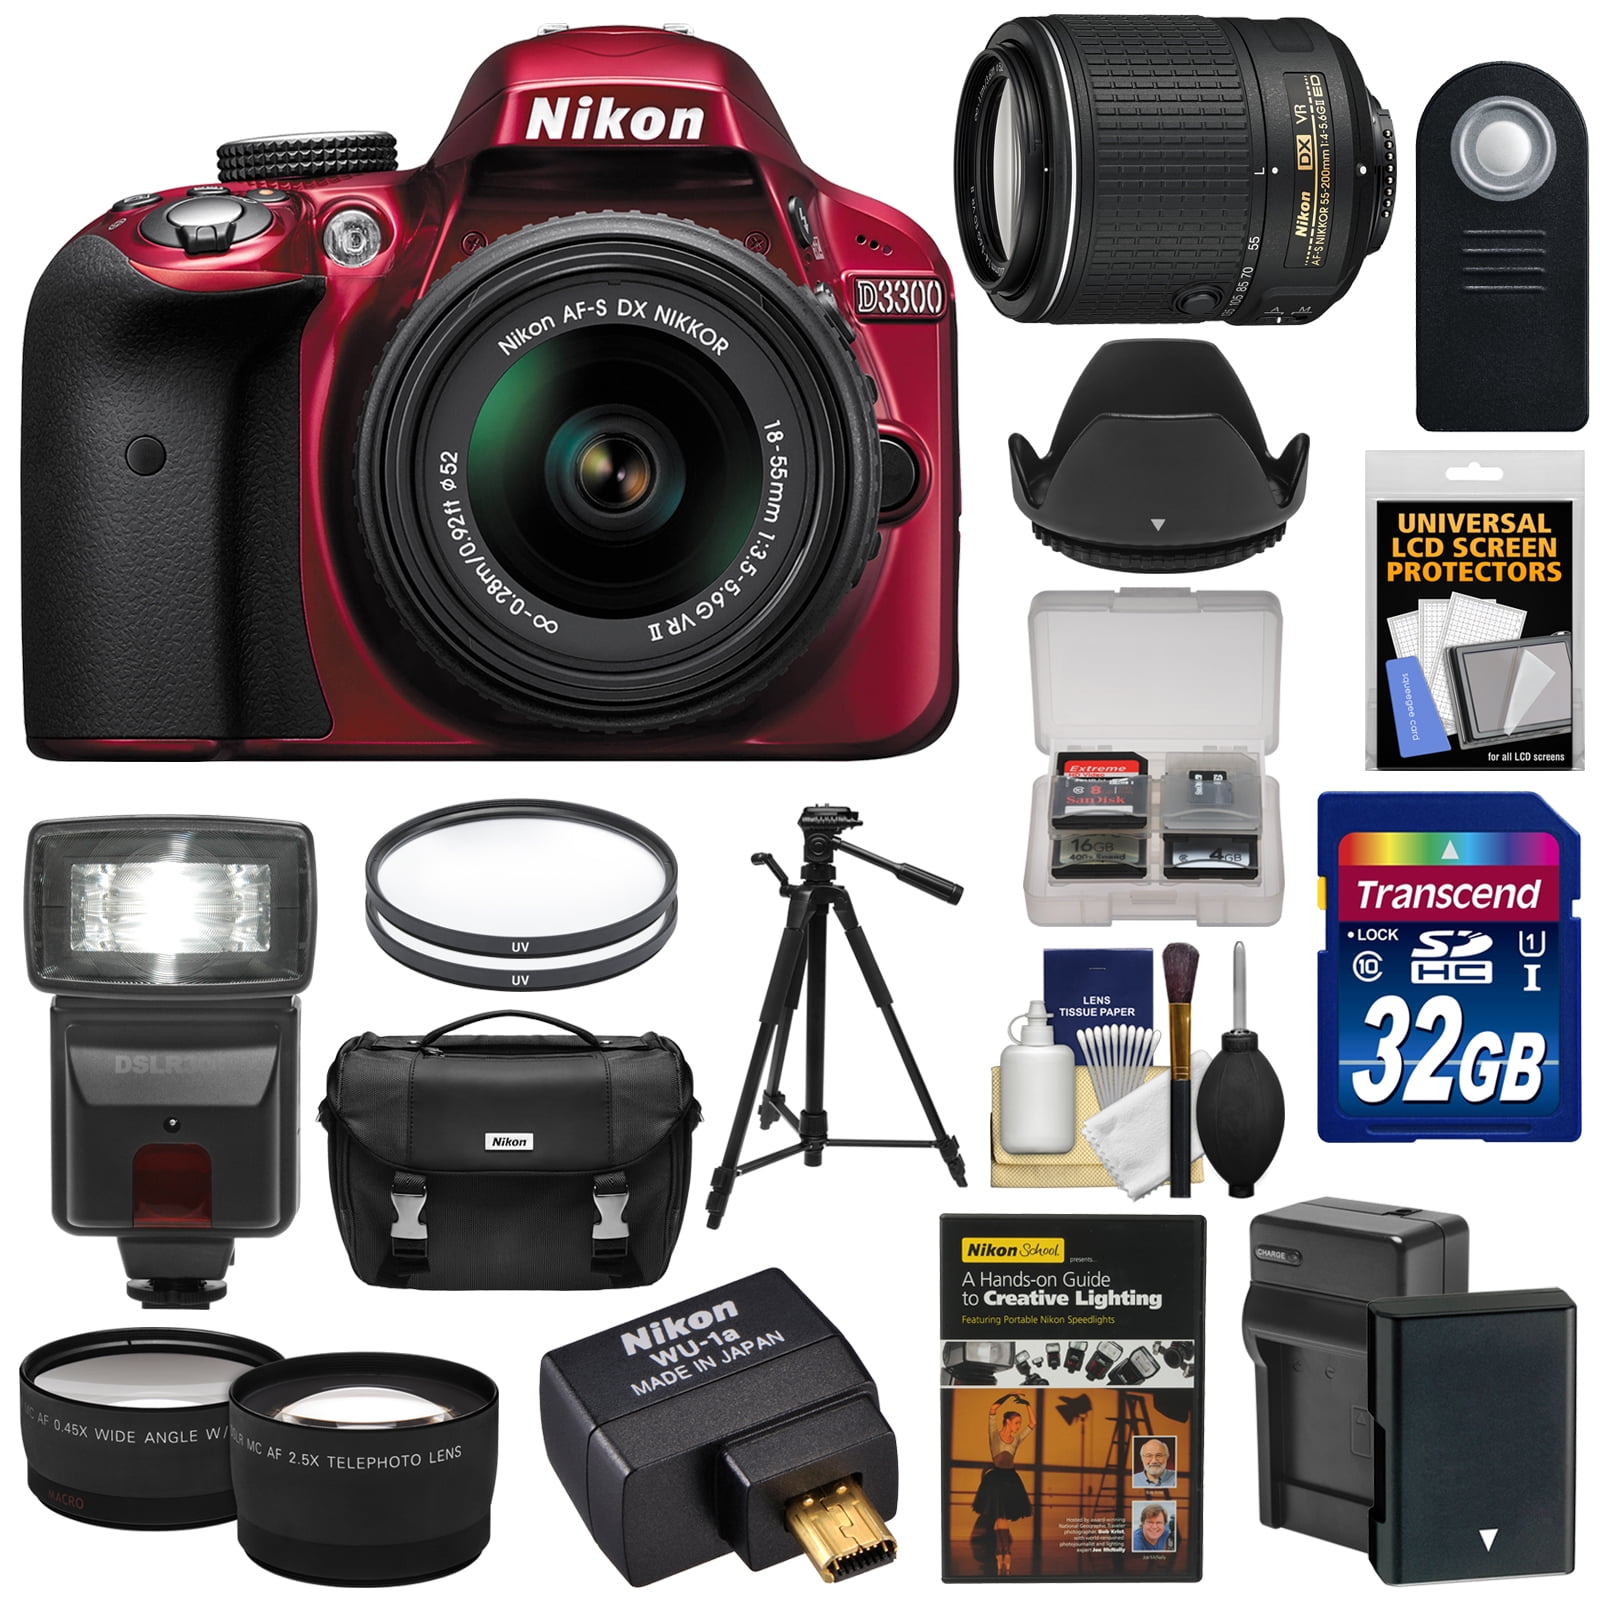 カメラ デジタルカメラ Nikon D3300 Digital SLR Camera & 18-55mm (Red) & 55-200mm VR II Lens +  WU-1a Wi-Fi Adapter + 32GB + Case + Battery + Tripod + Flash + 2 Lens Kit